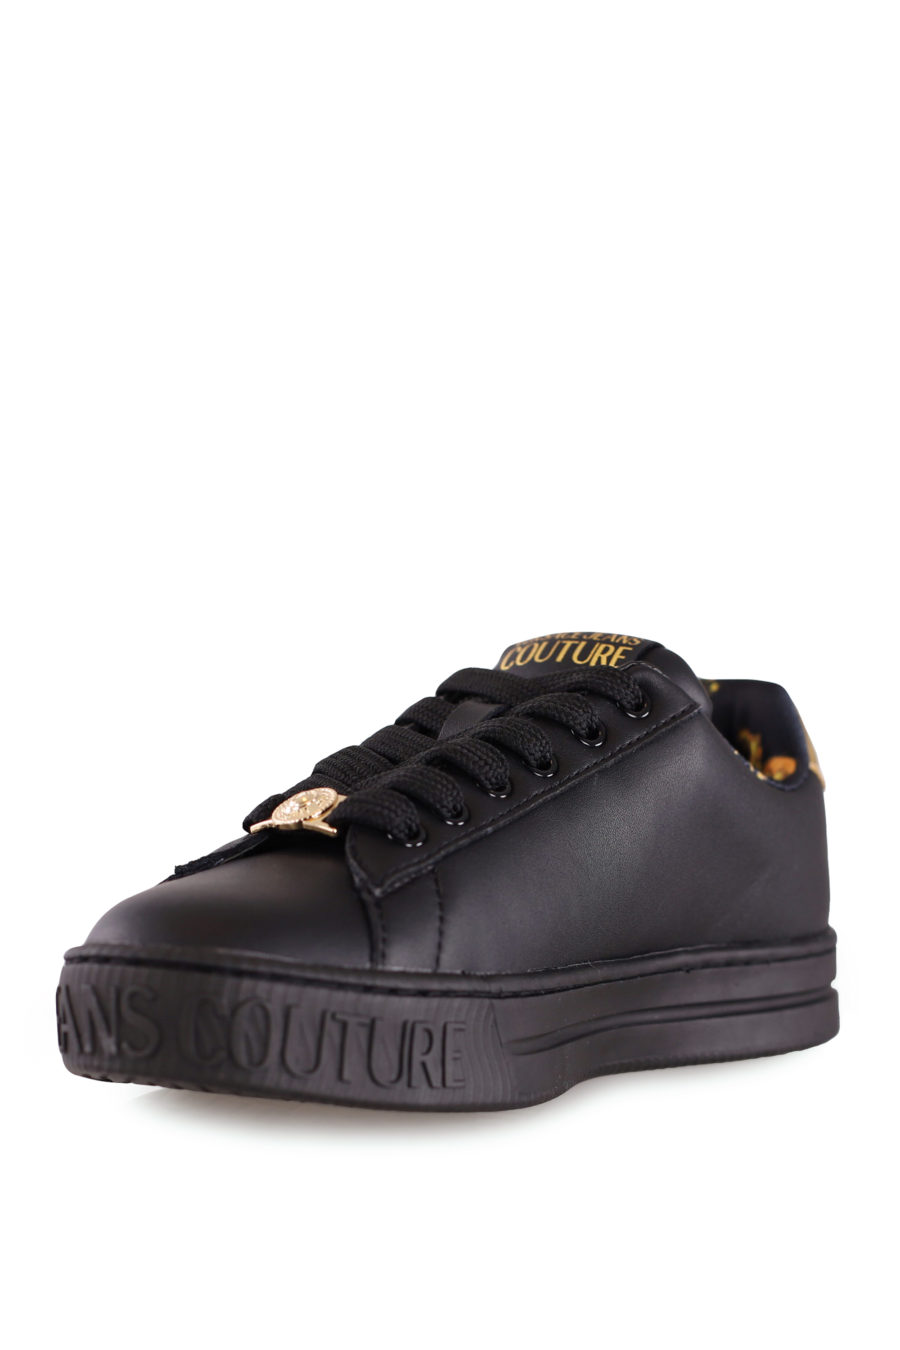 Zapatillas negras con logo dorado - IMG 8212 copia